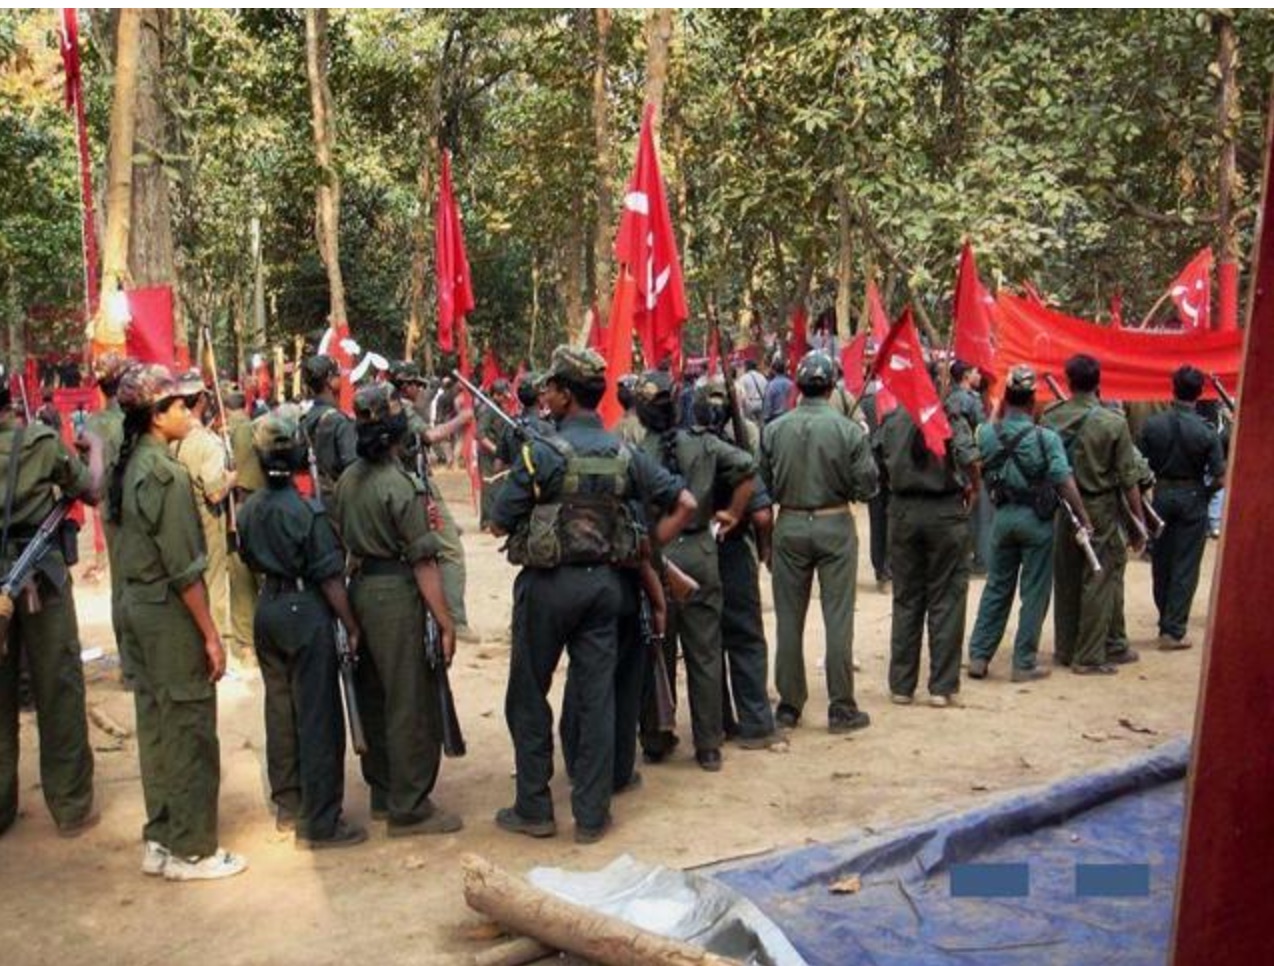 Un groupe de 30 à 40 Maoïstes s'étaient réunis dans une zone à cheval entre les régions de l'Andhra Pradesh et de l'Odisha où ils ont été pris en embuscade par la police indienne. Copie d'écran d'Hindustani Times, le 24 octobre 2016